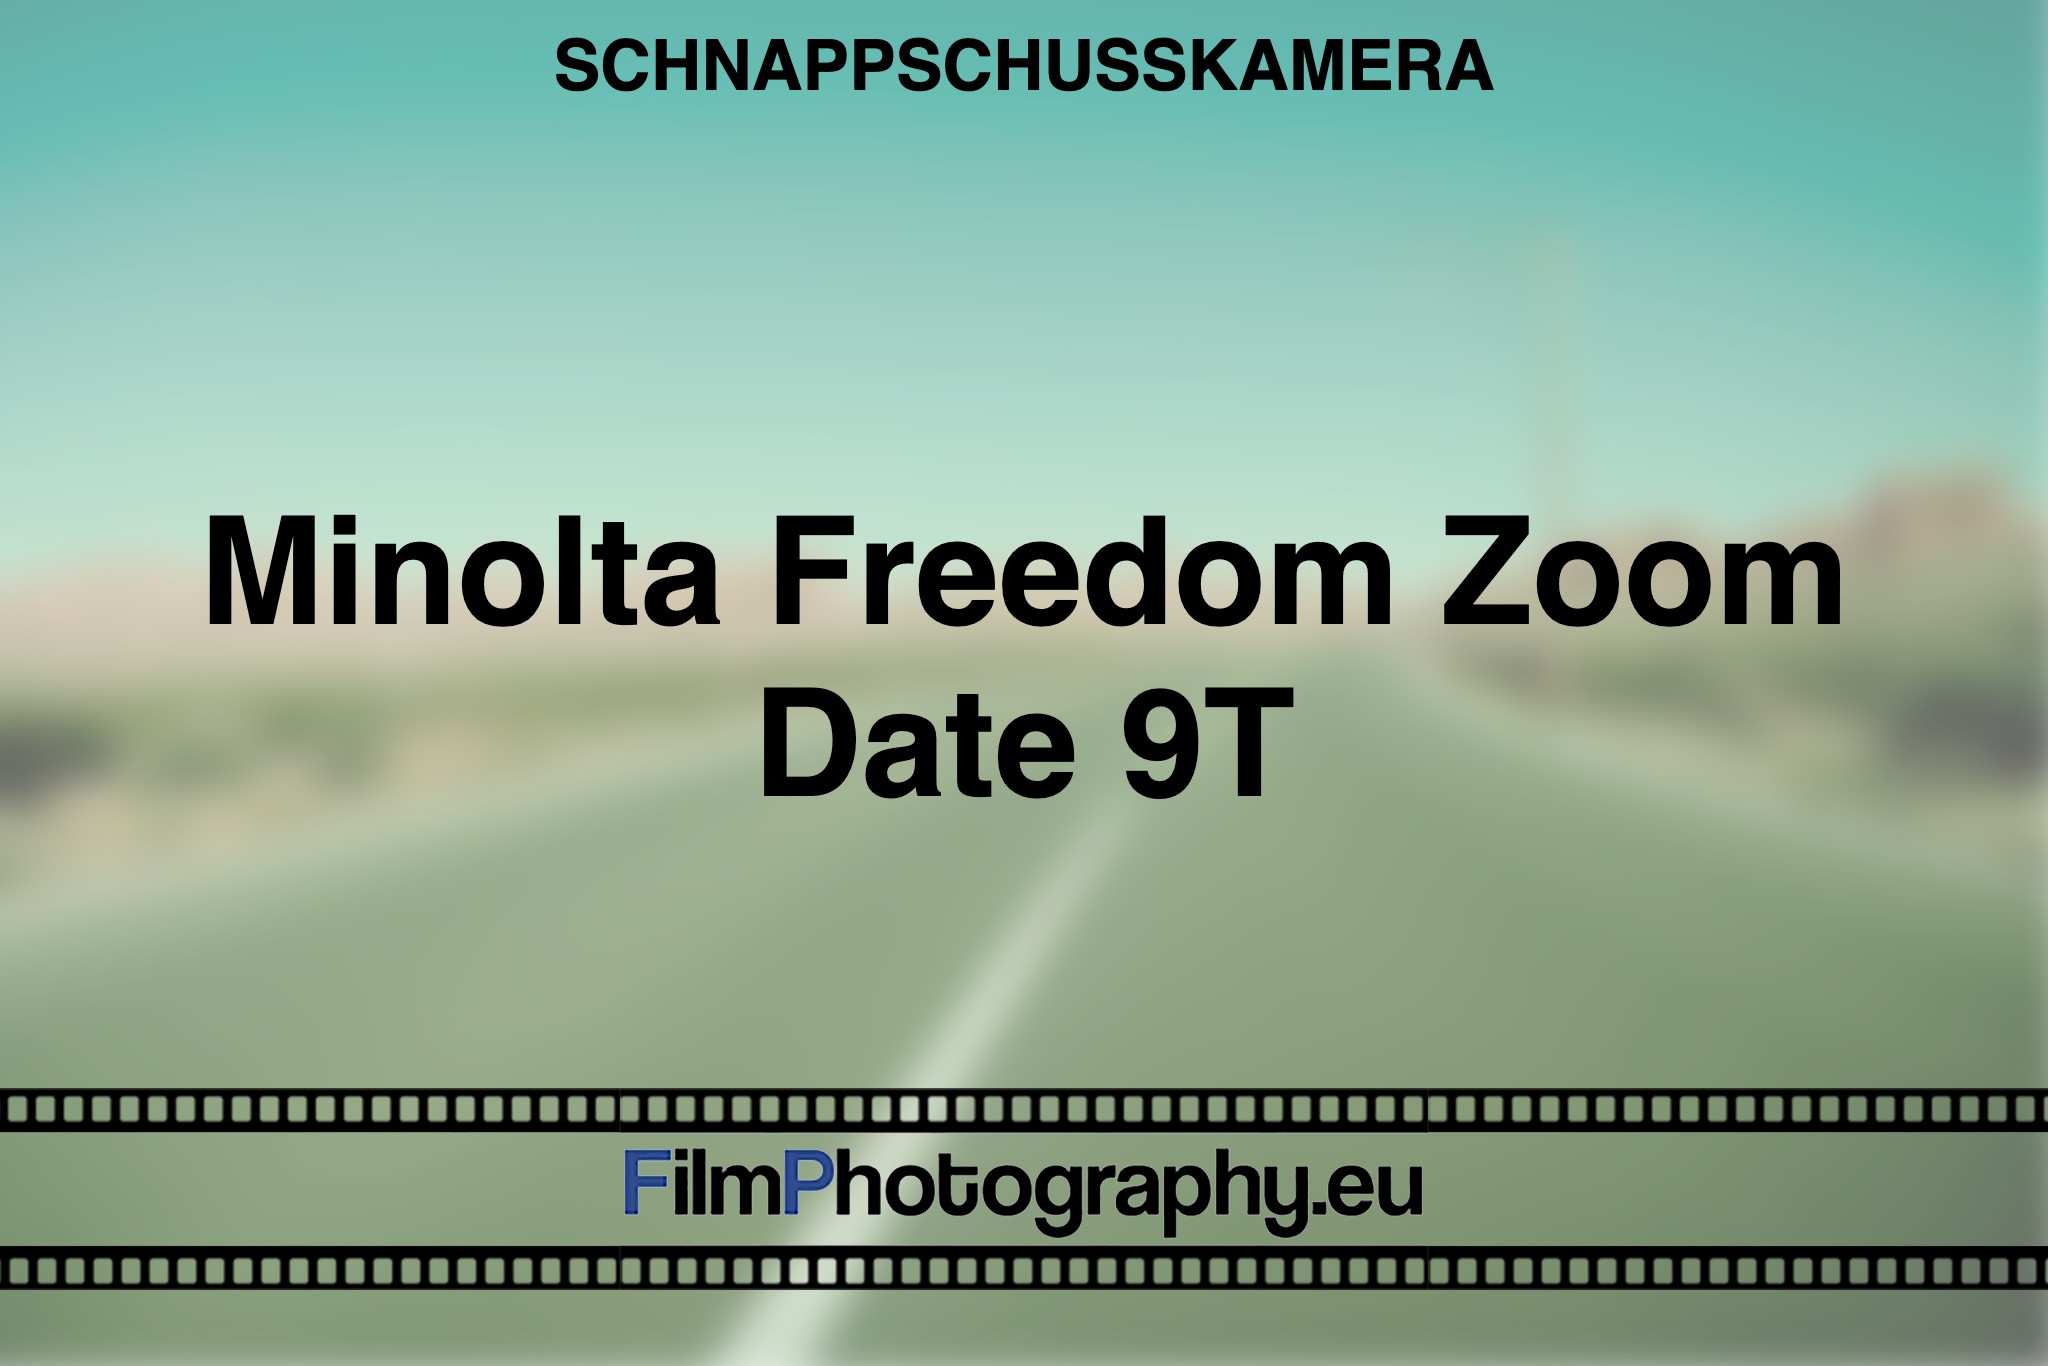 minolta-freedom-zoom-date-9t-schnappschusskamera-bnv